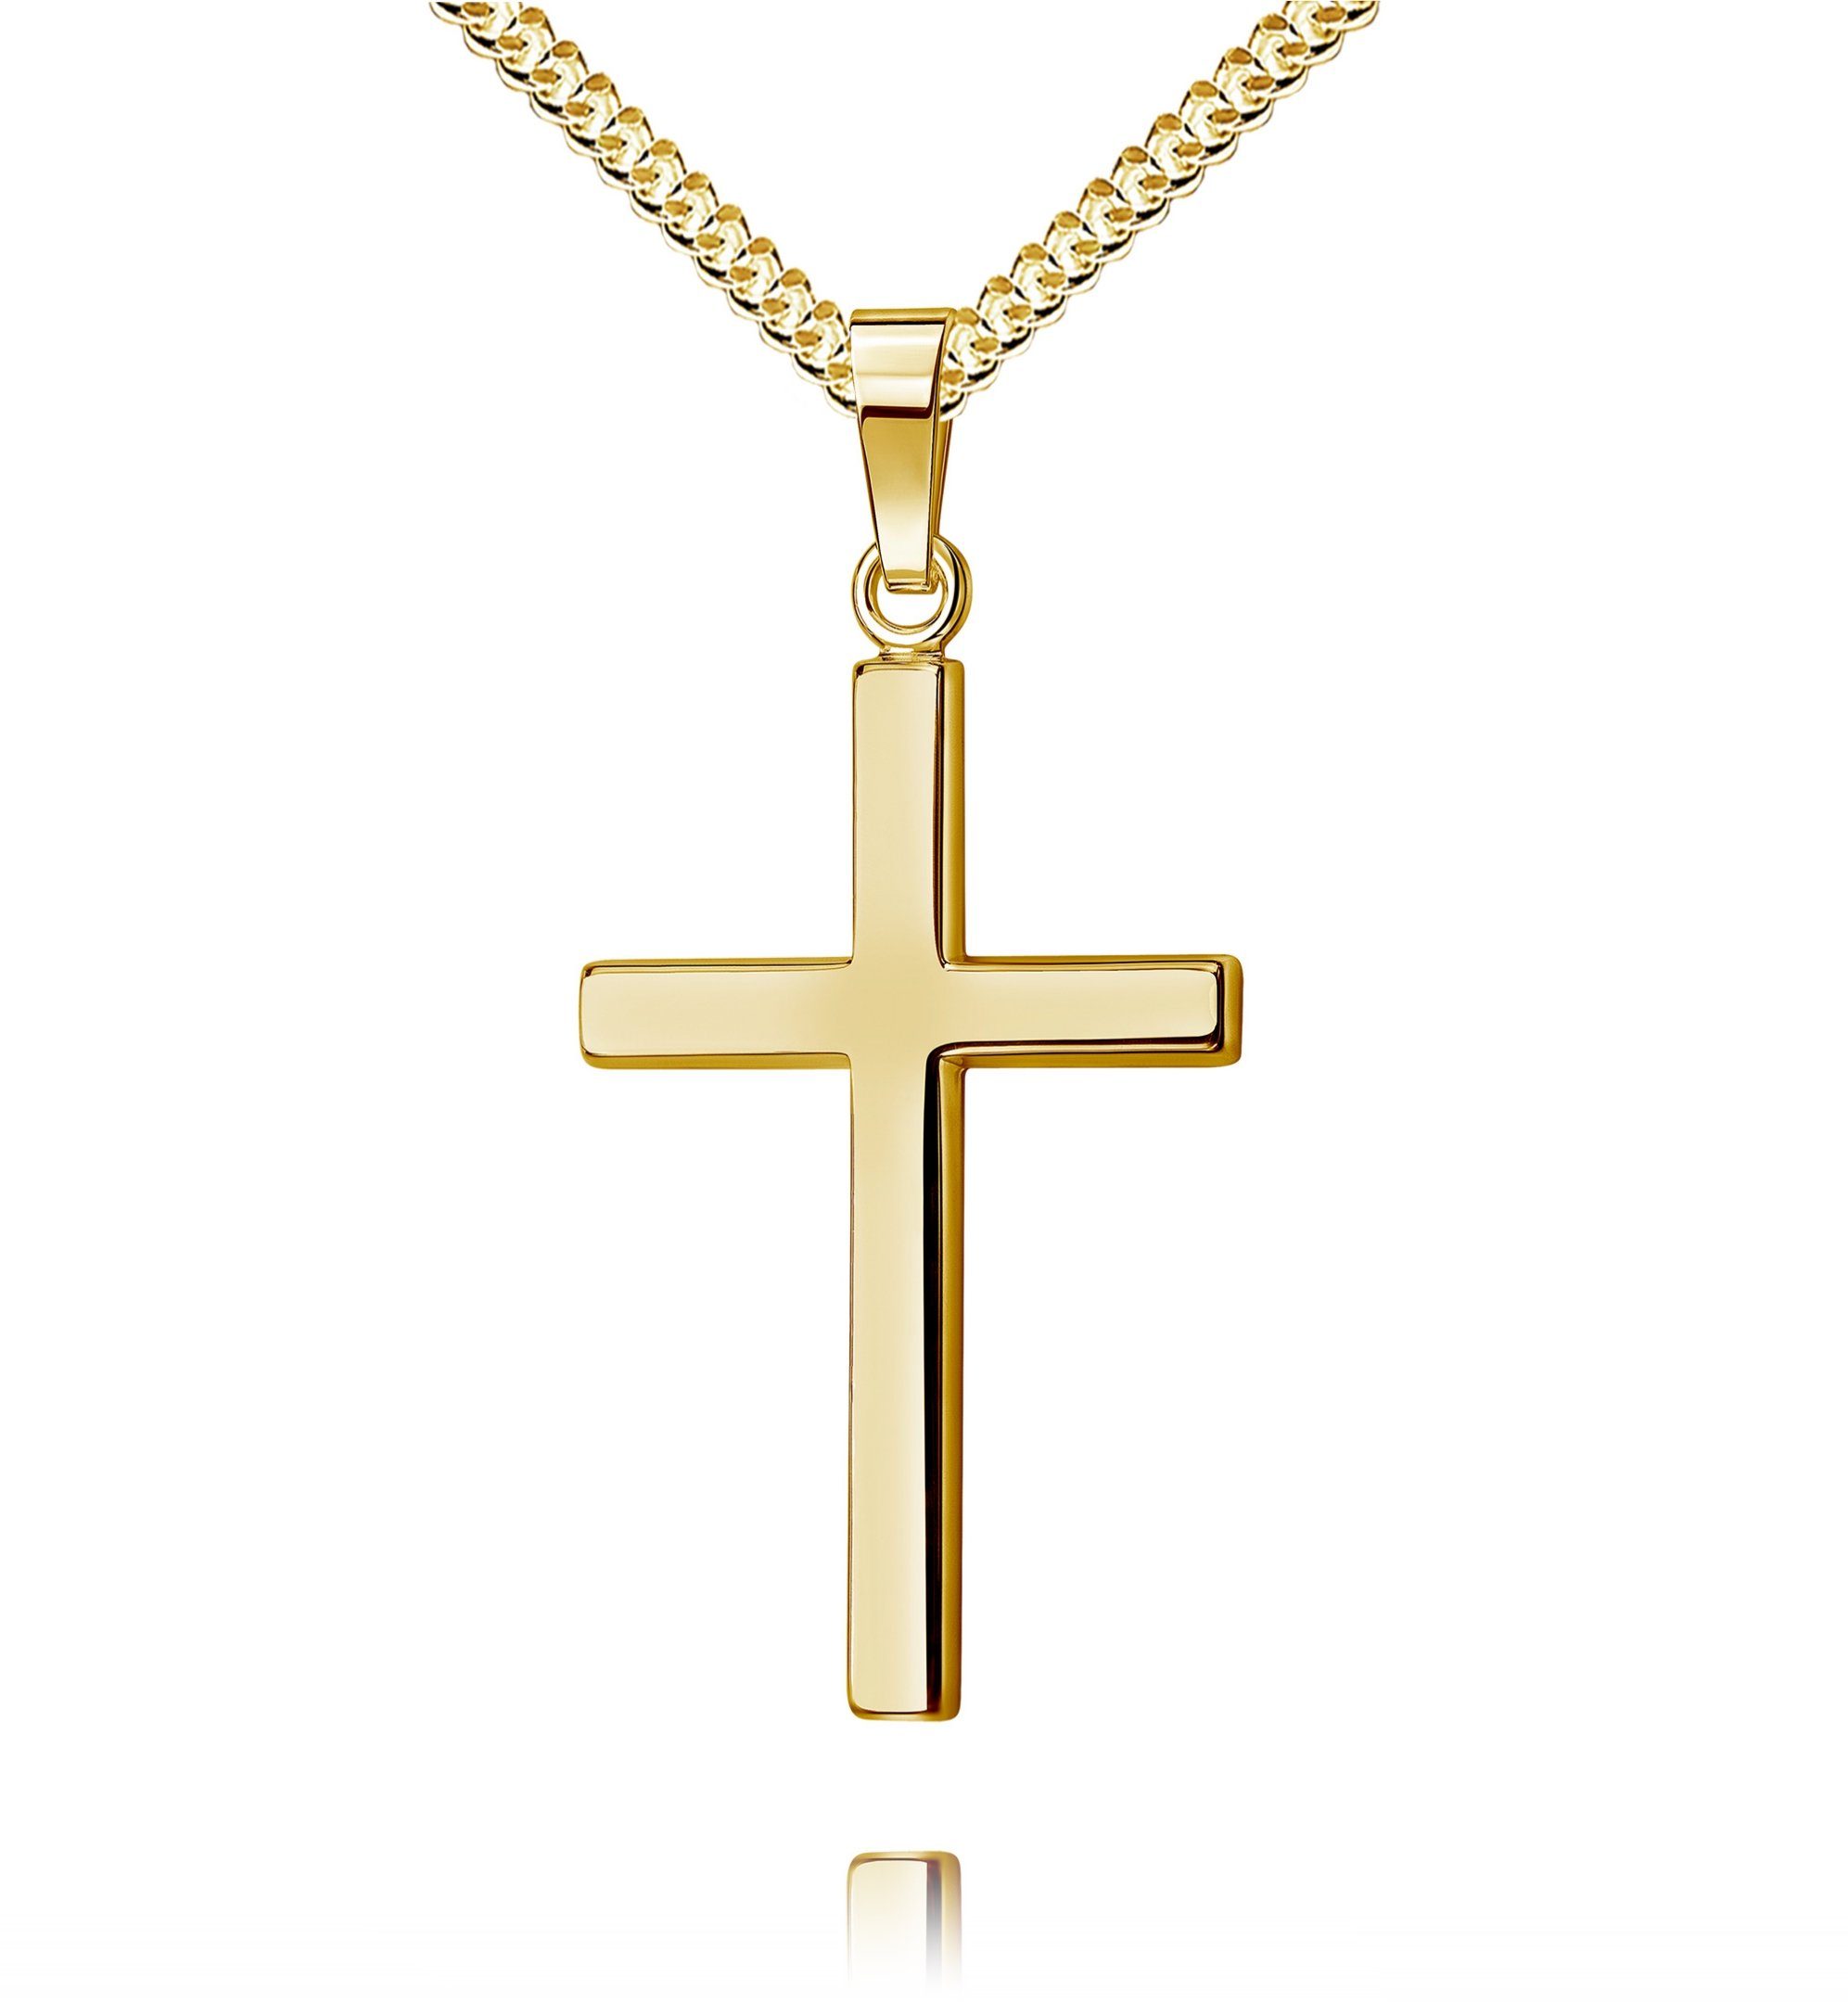 JEVELION Kreuzkette groß Kreuz Anhänger 750 Gold - Made in Germany  (Goldkreuz, für Damen und Herren), MIT KETTE vergoldet- Länge wählbar 36 -  70 cm.